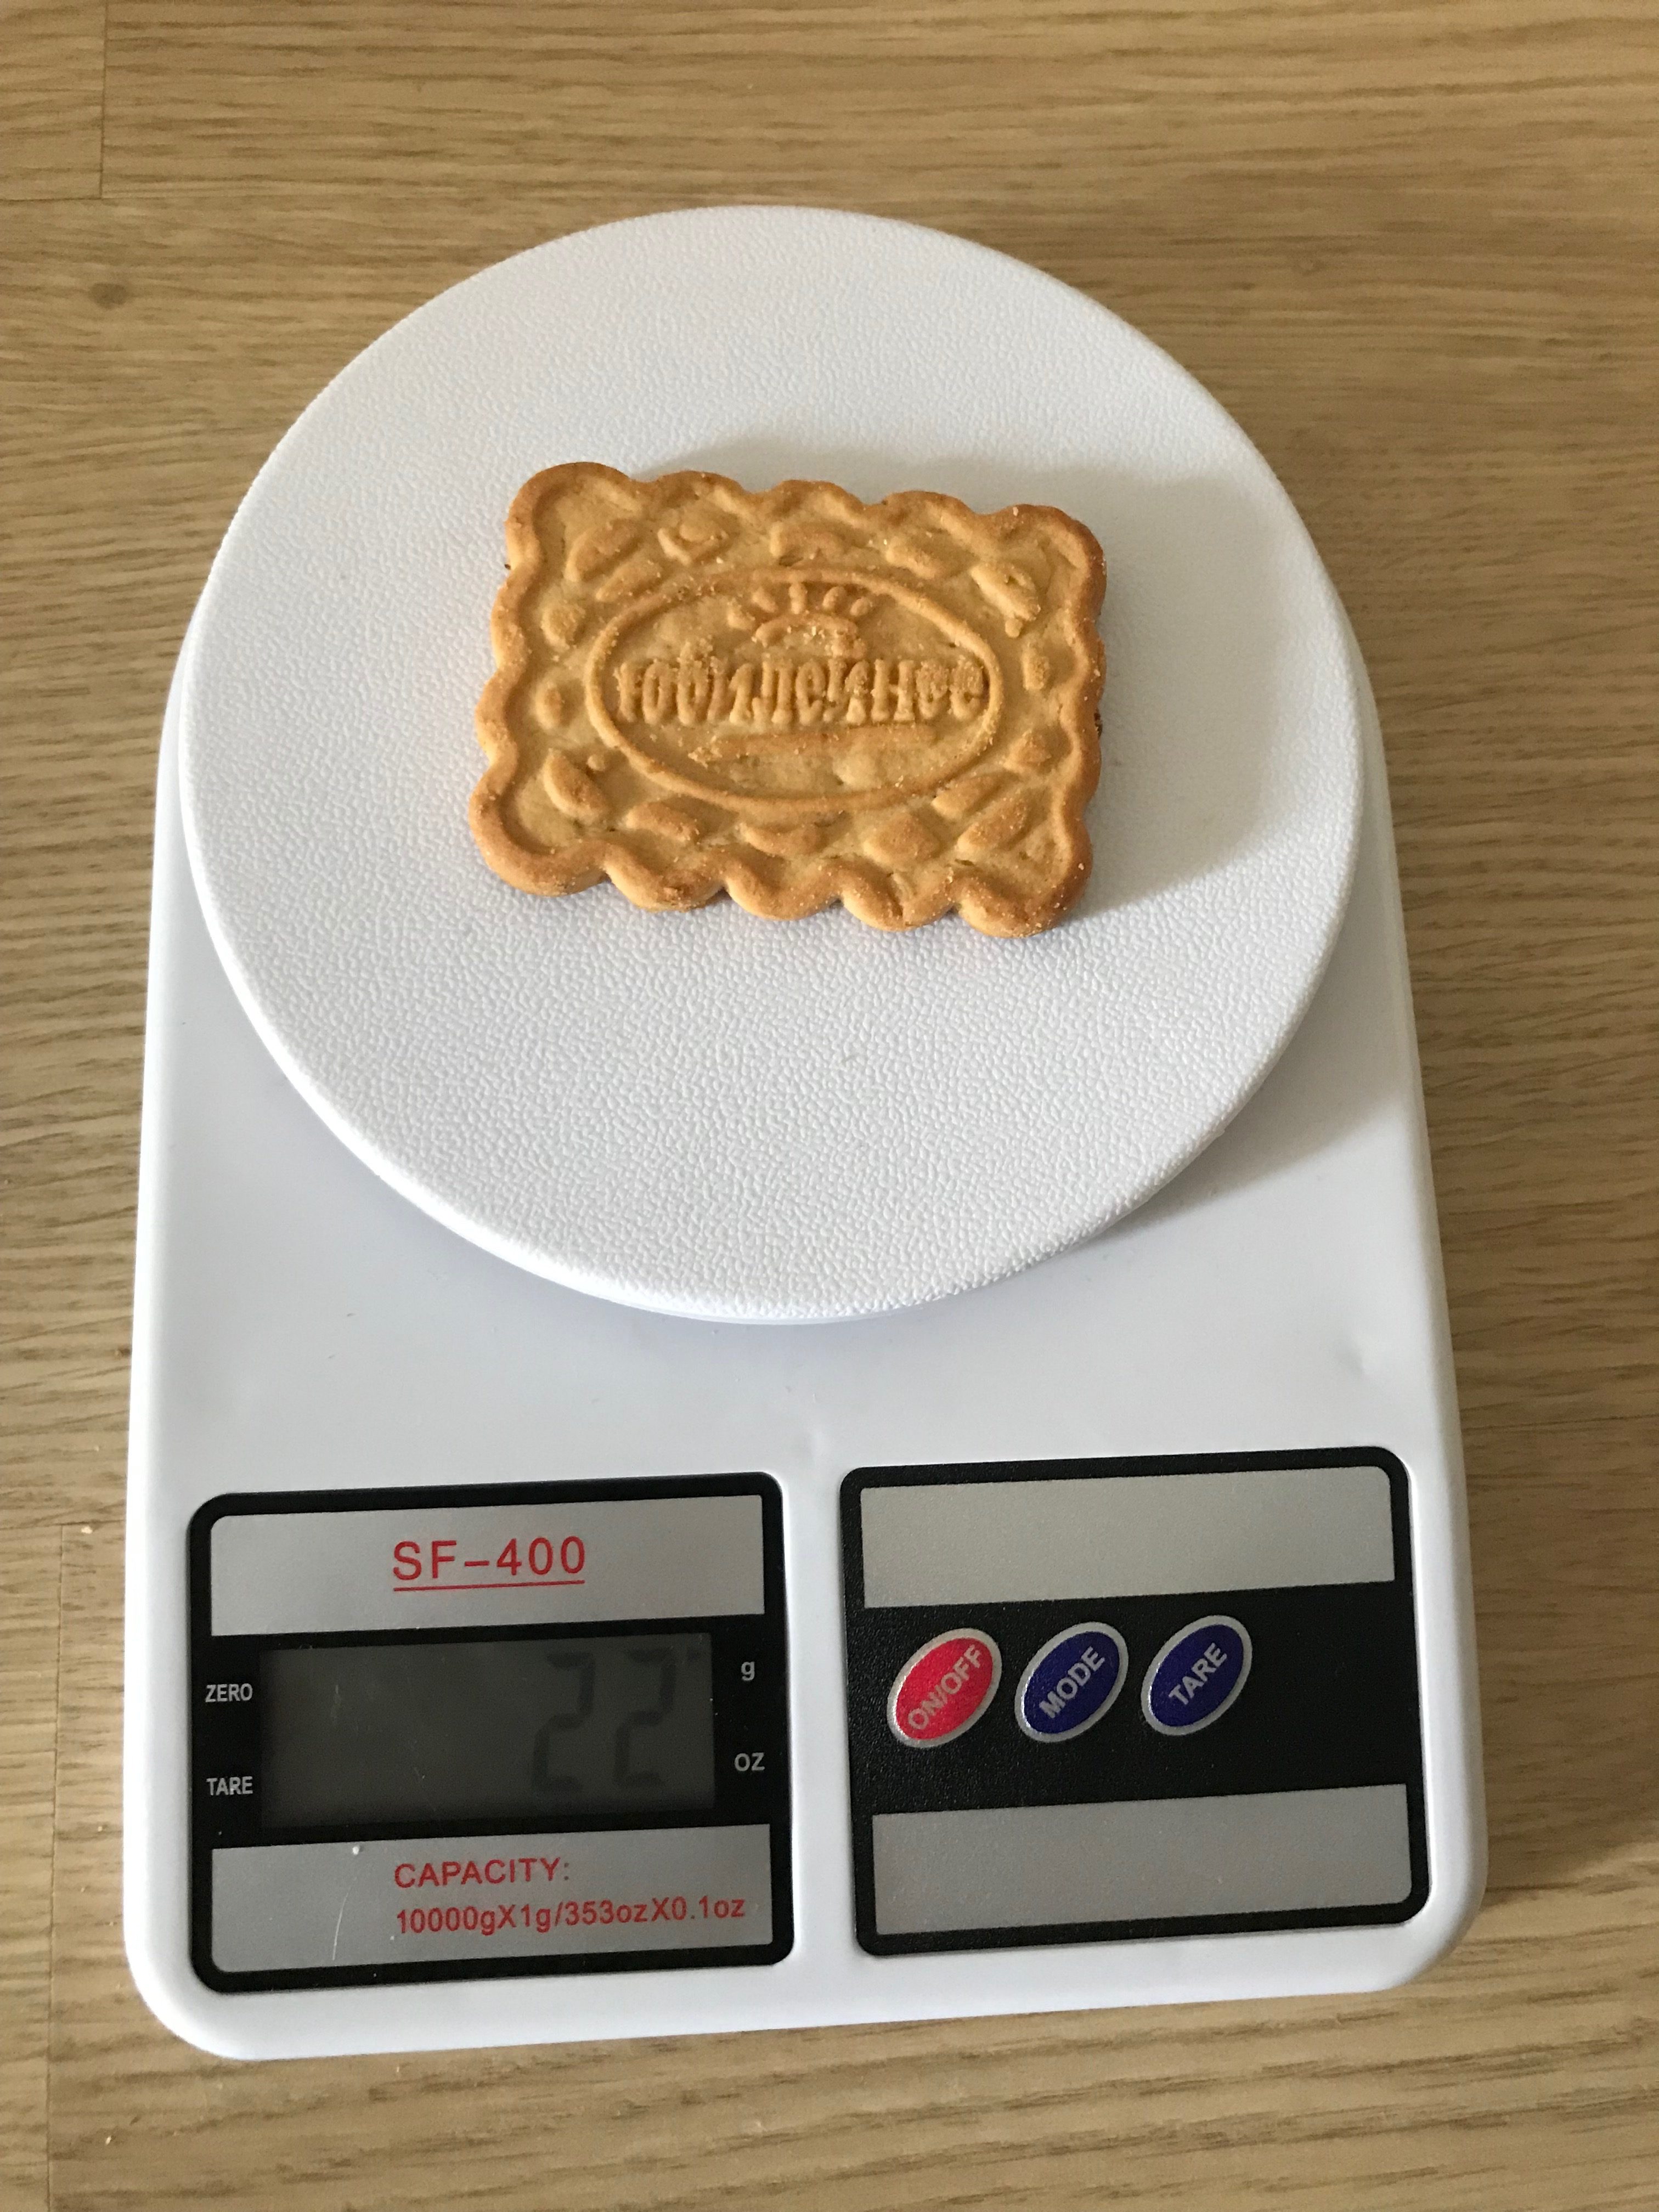 Сколько весит 1 печенье?